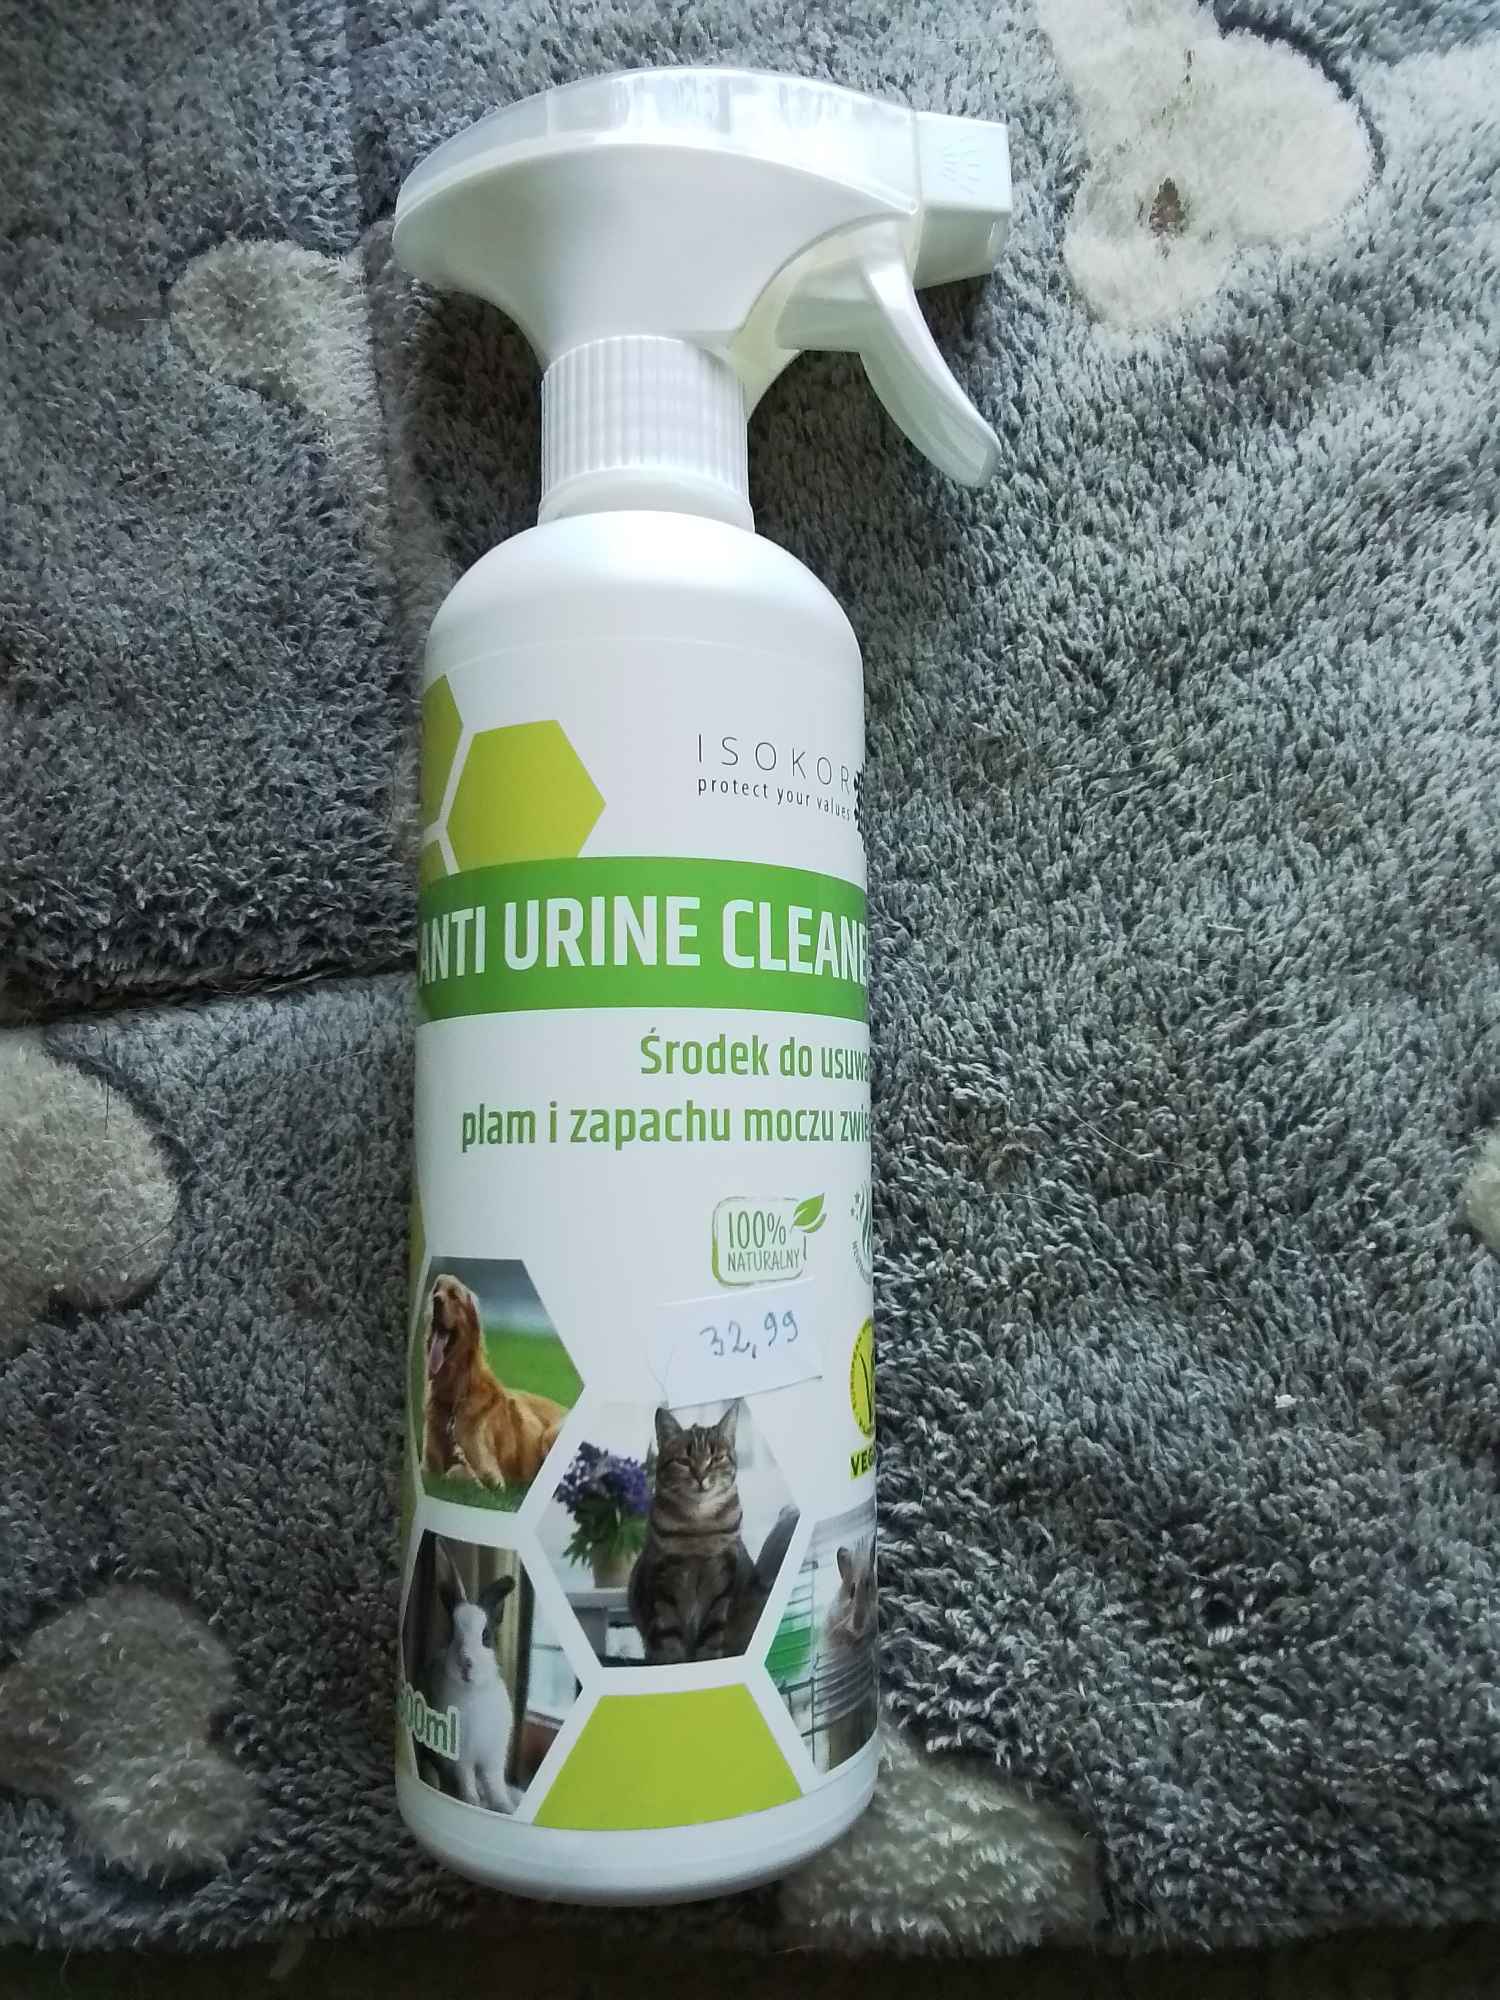 Neutralizator zapachu moczu dla psów I kotów*ANTI URINE CLEANER*. Katowice - zdjęcie 1